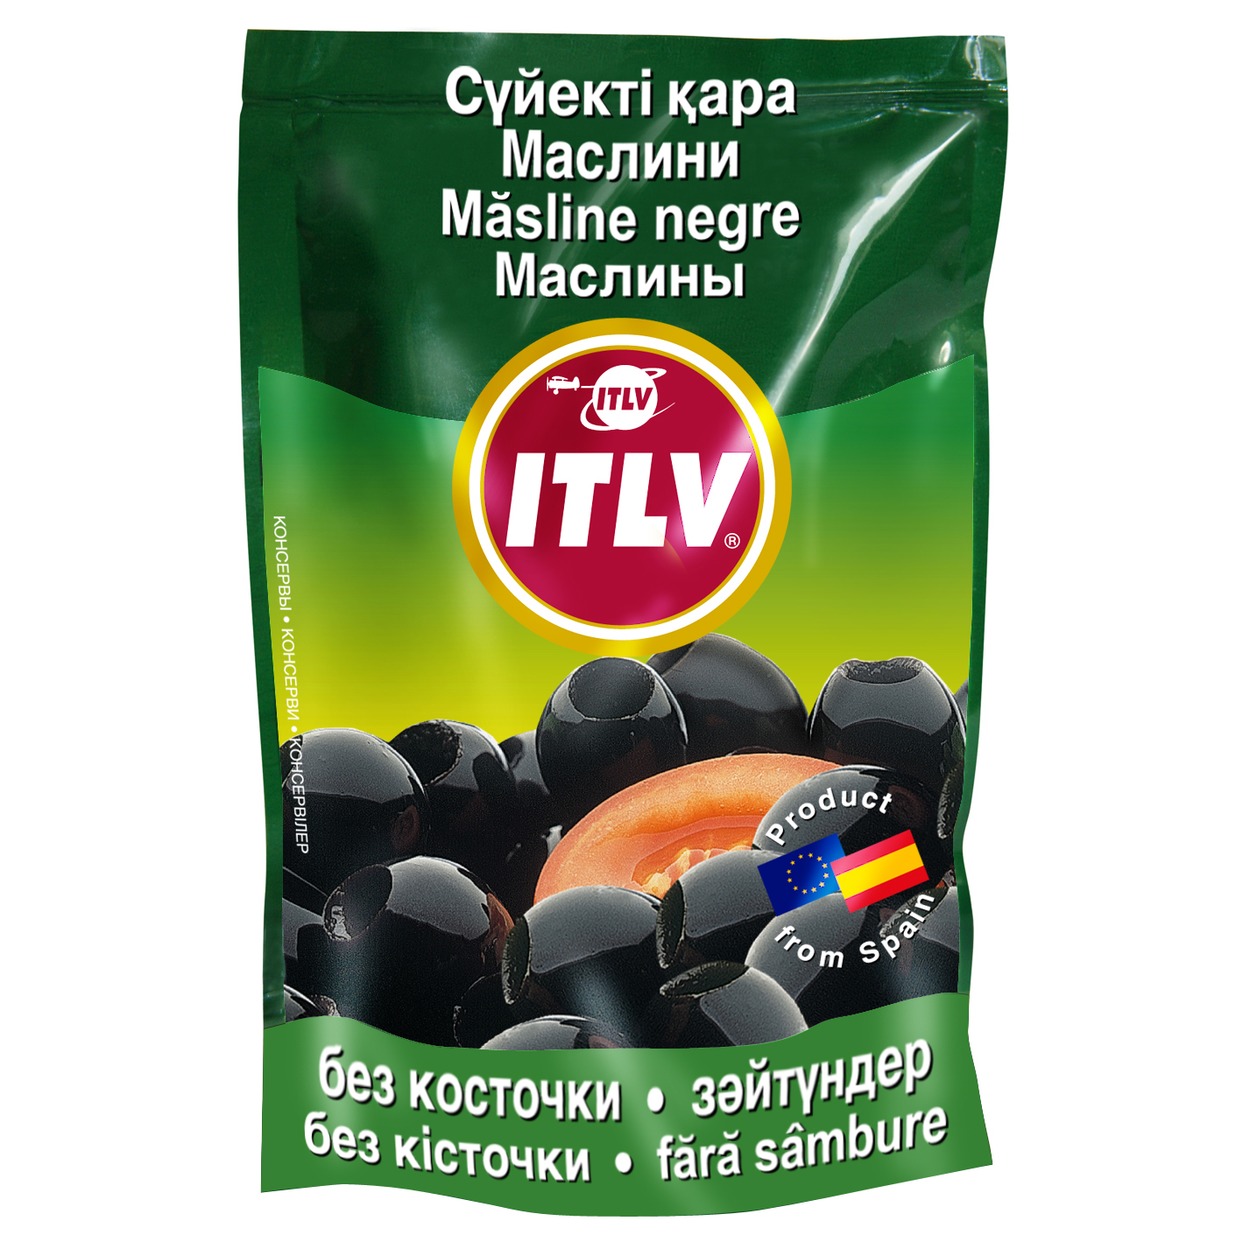 Маслины ITLV черные без косточки 170г по акции в Пятерочке